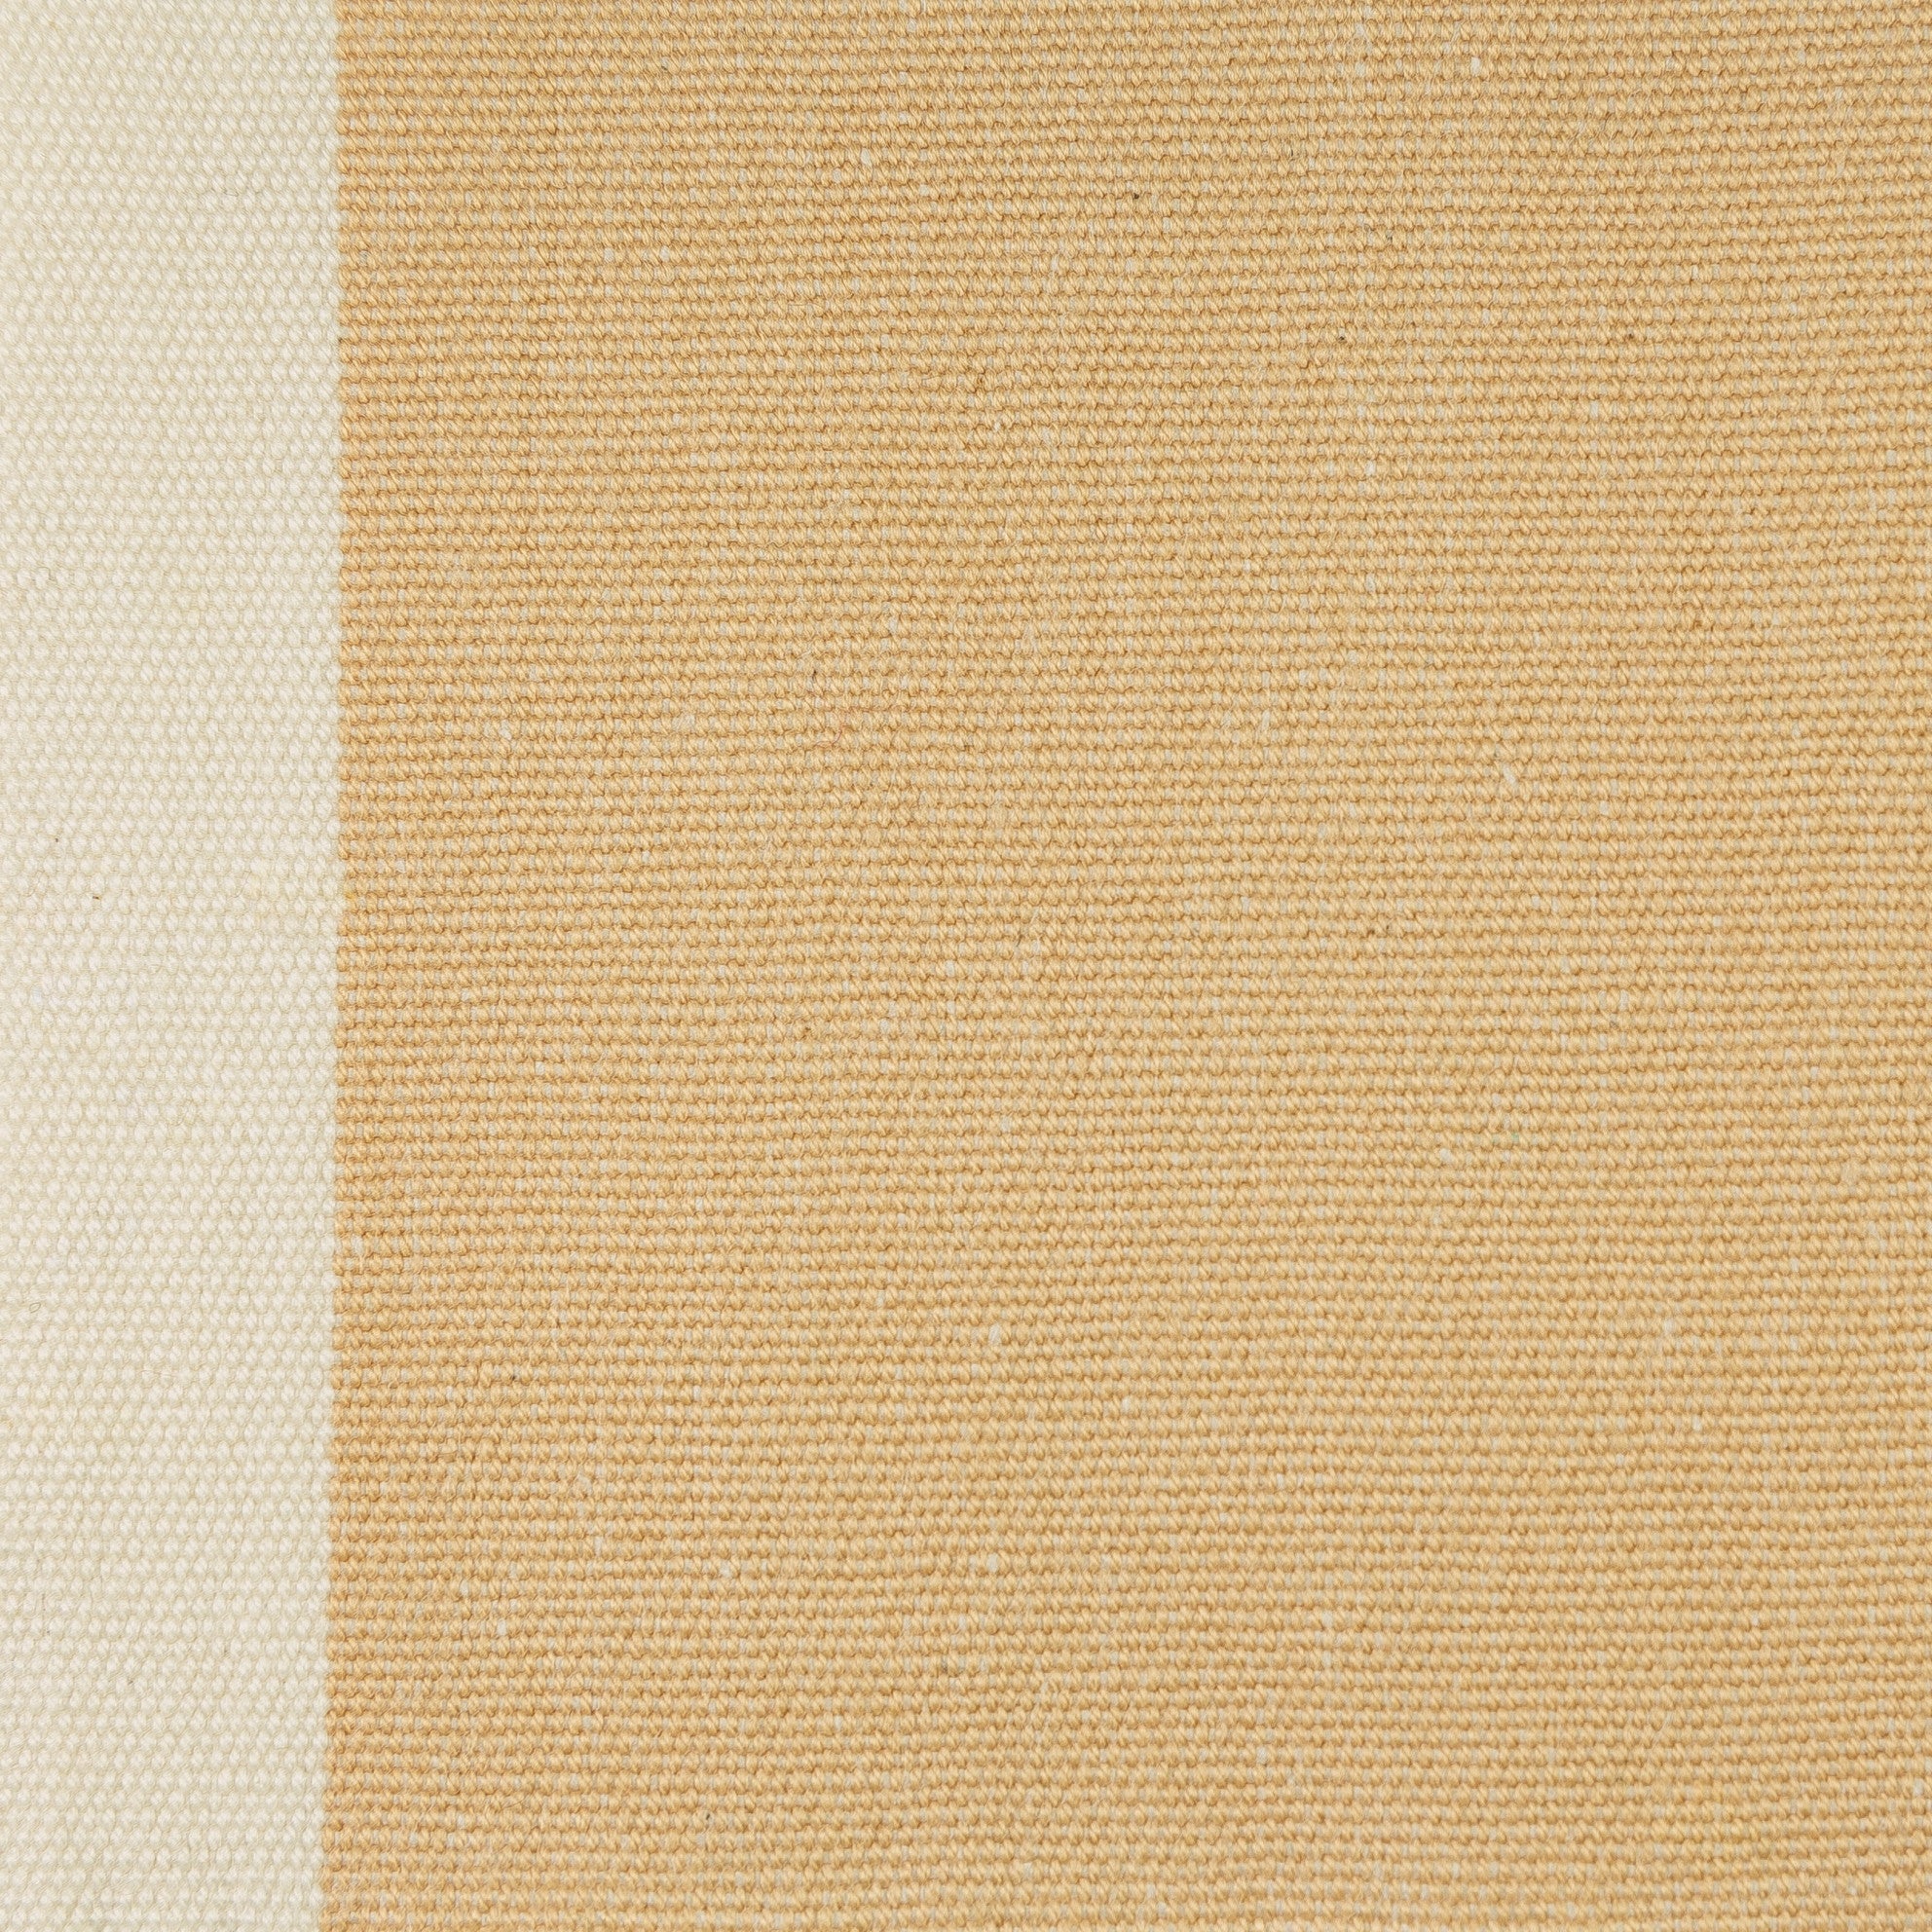 Woven Striped Fabric - Lizard 39/048 Trade Winds | Nicholas Engert Interiors